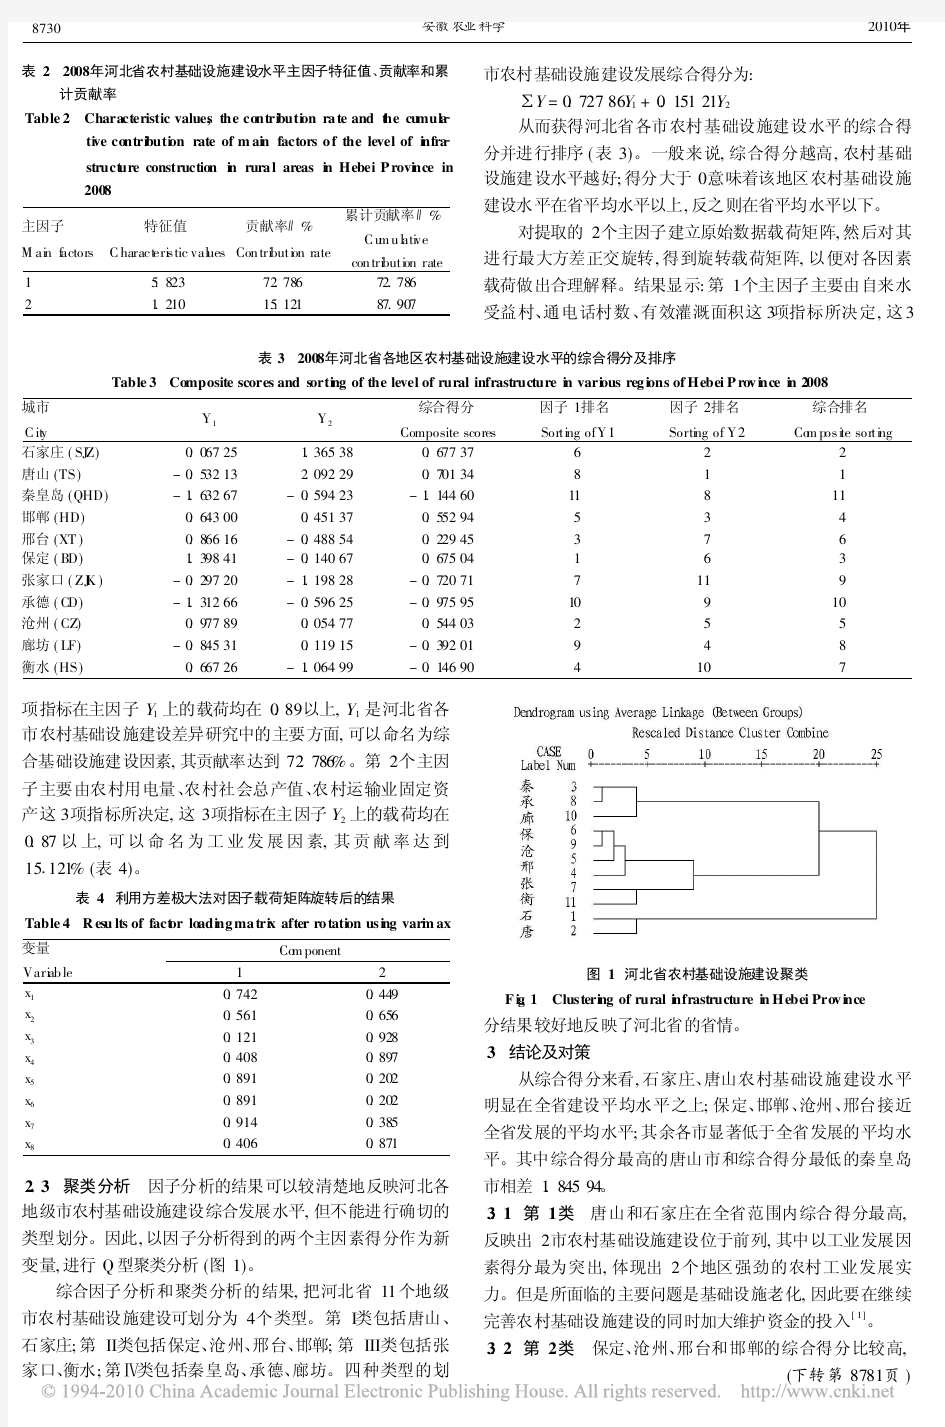 河北省农村基础设施建设区域差异分析